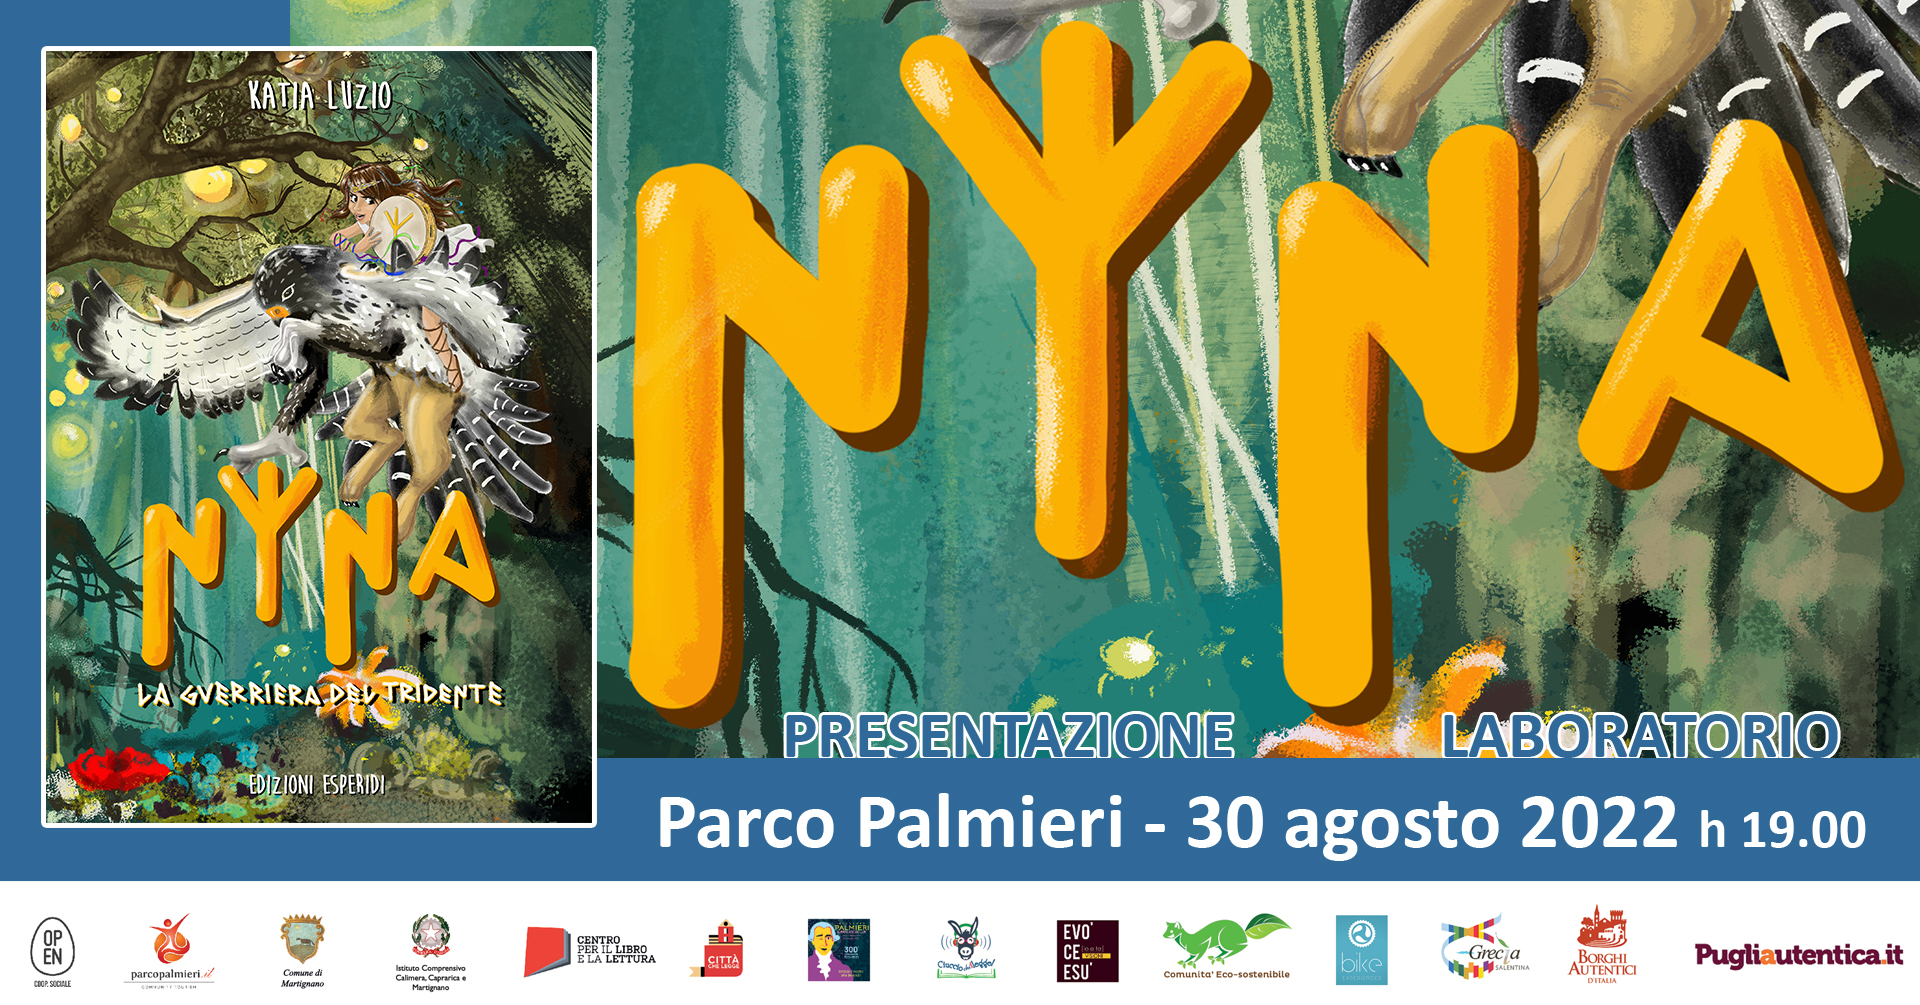 Martignano, Parco Palmieri: la presentazione del libro Nyna